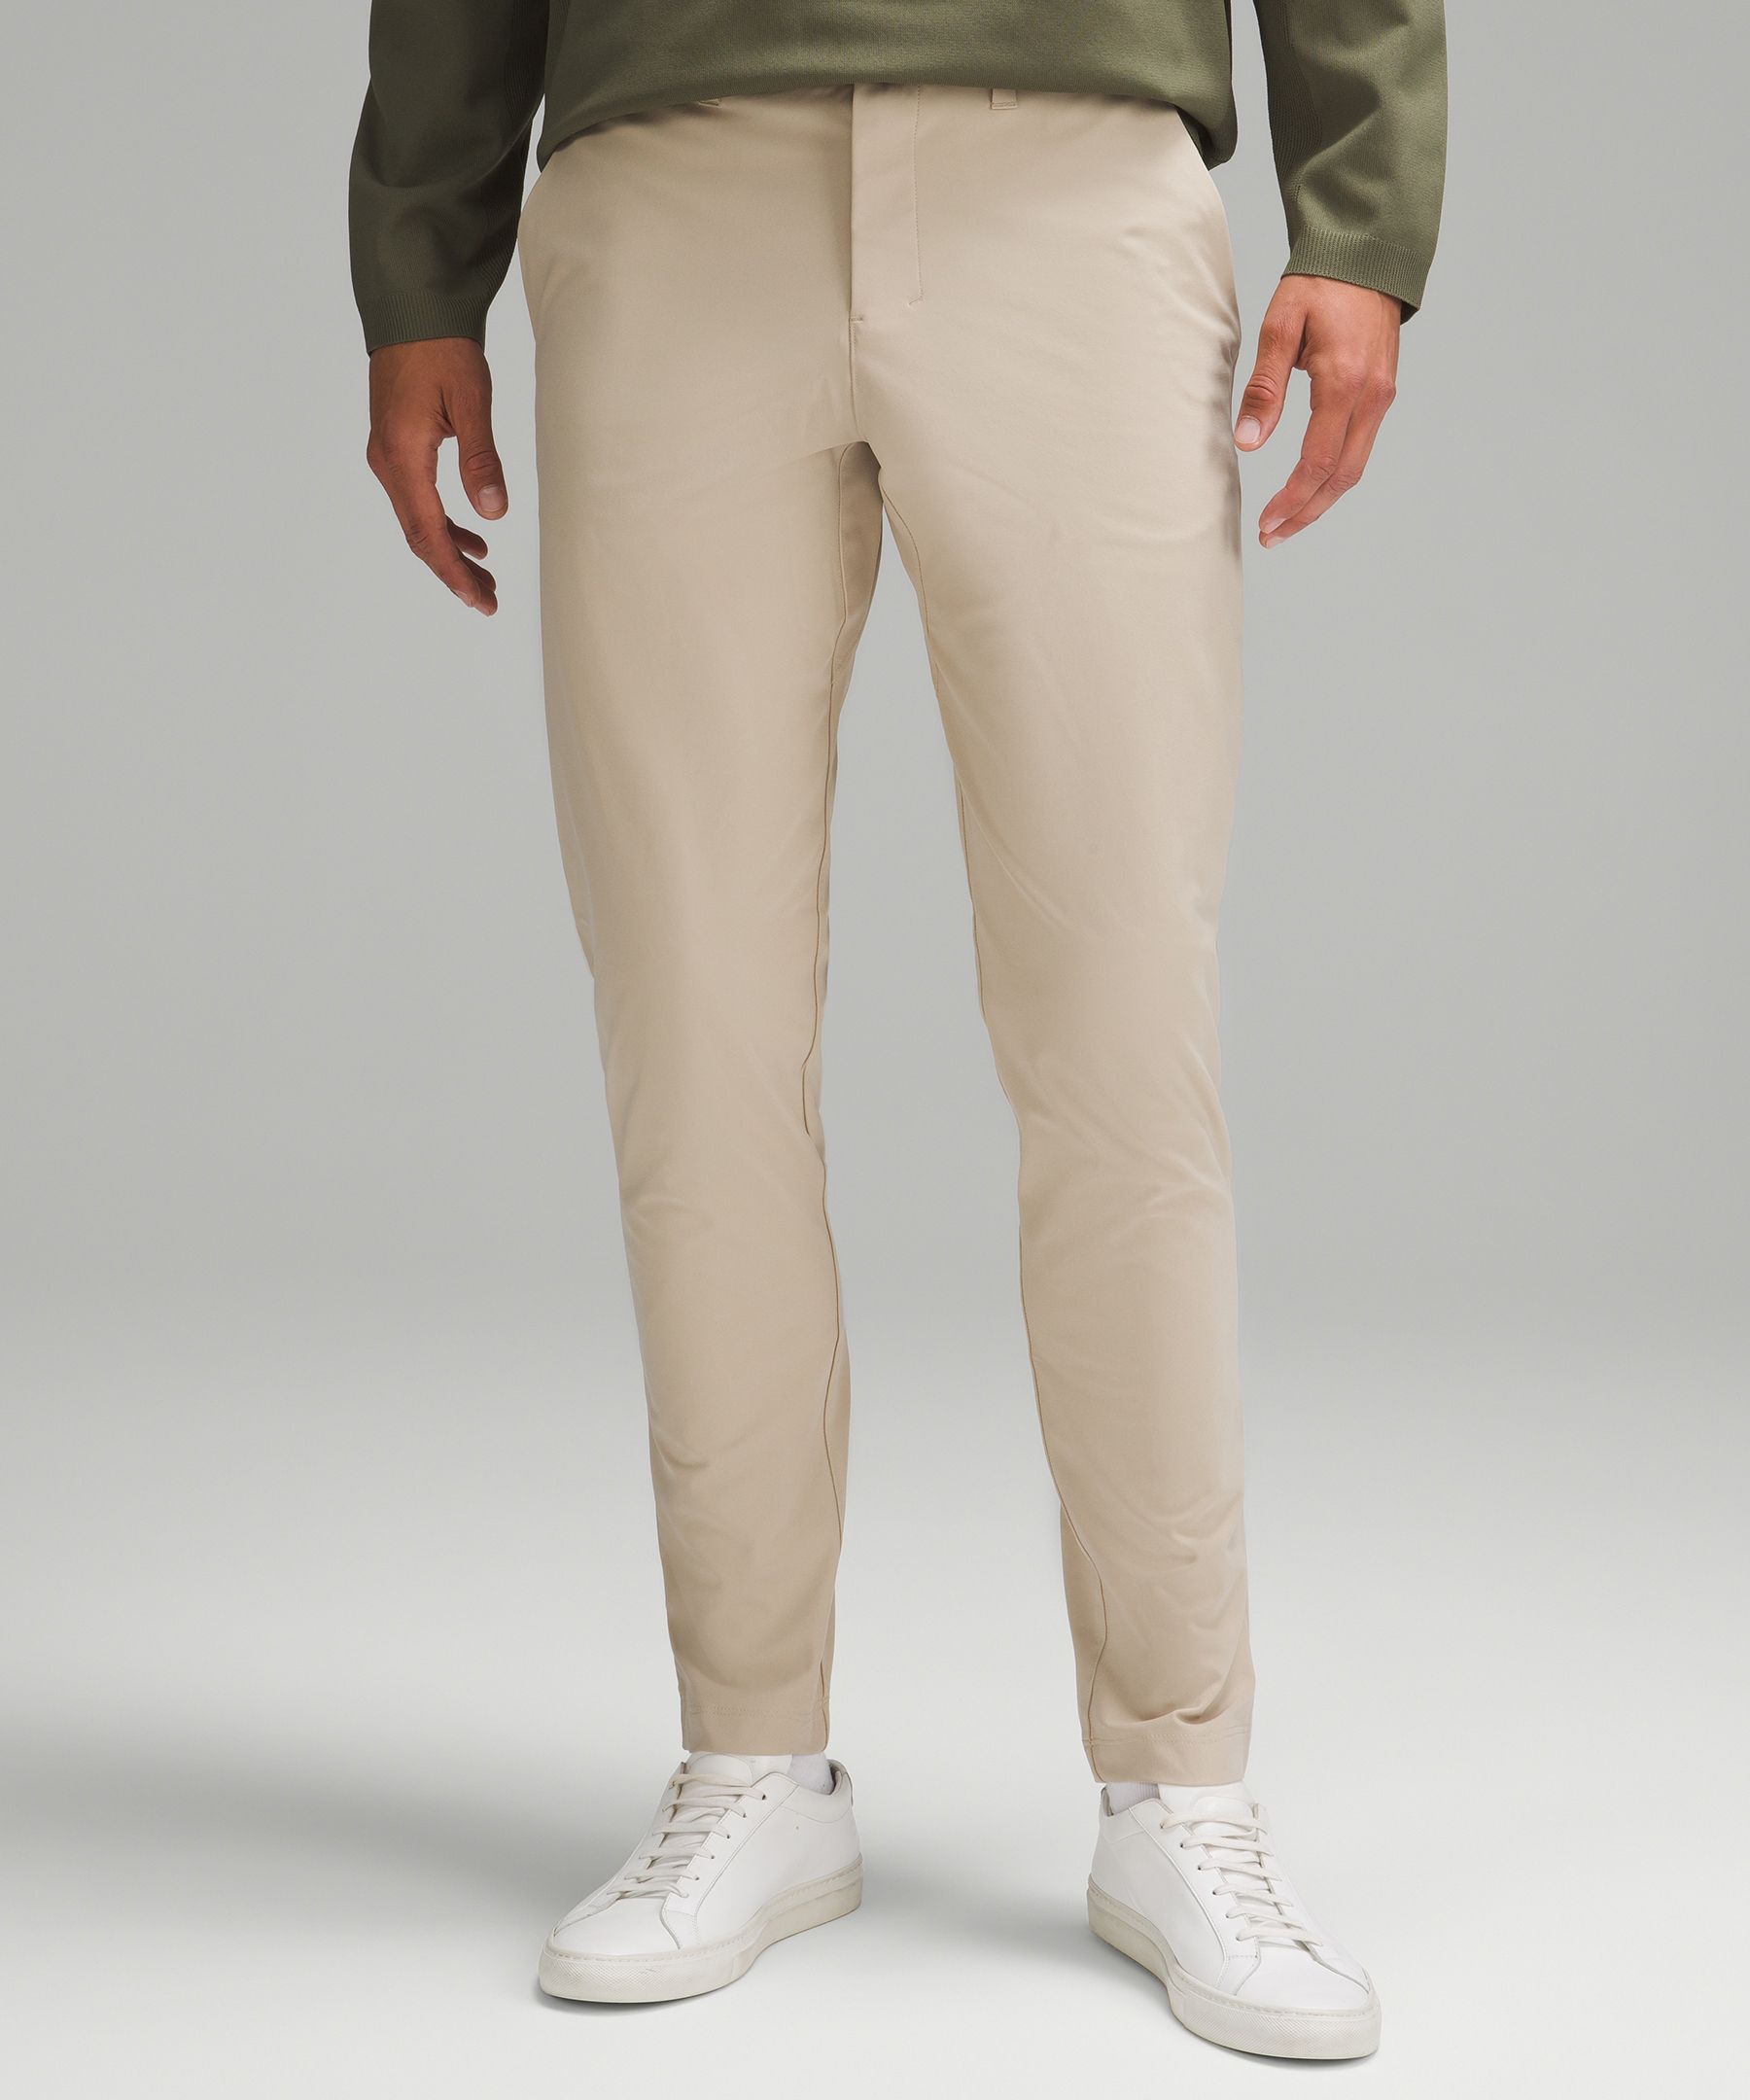 Lululemon athletica ABC Classic-Fit 5 Pocket Pant 37L *Warpstreme, Men's  Trousers